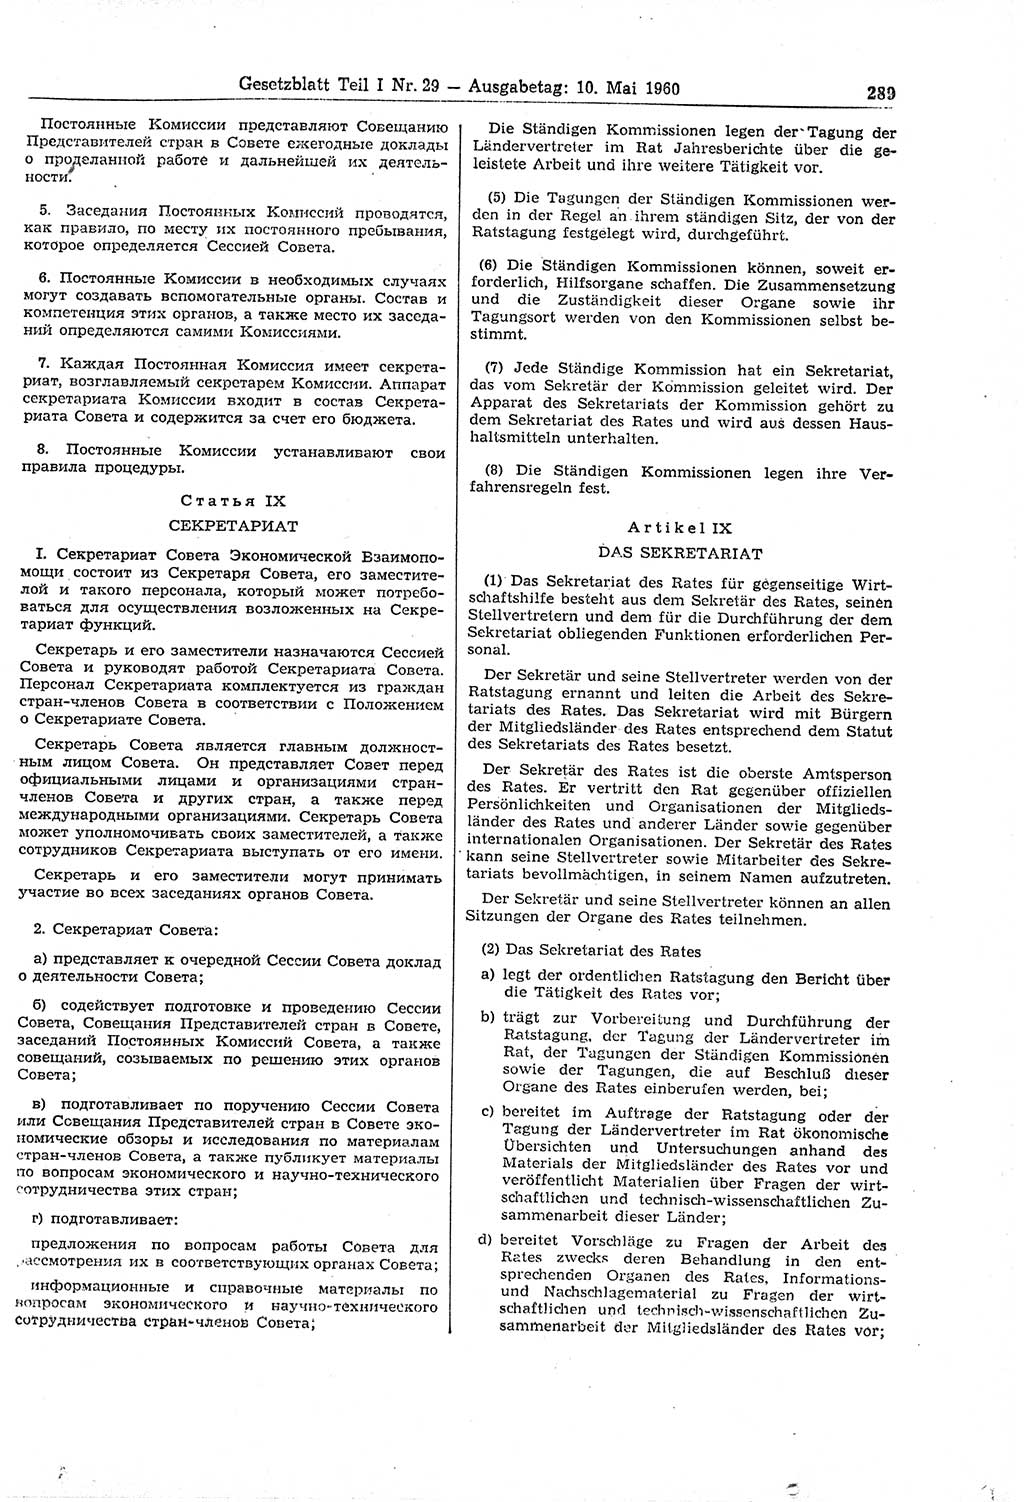 Gesetzblatt (GBl.) der Deutschen Demokratischen Republik (DDR) Teil Ⅰ 1960, Seite 289 (GBl. DDR Ⅰ 1960, S. 289)